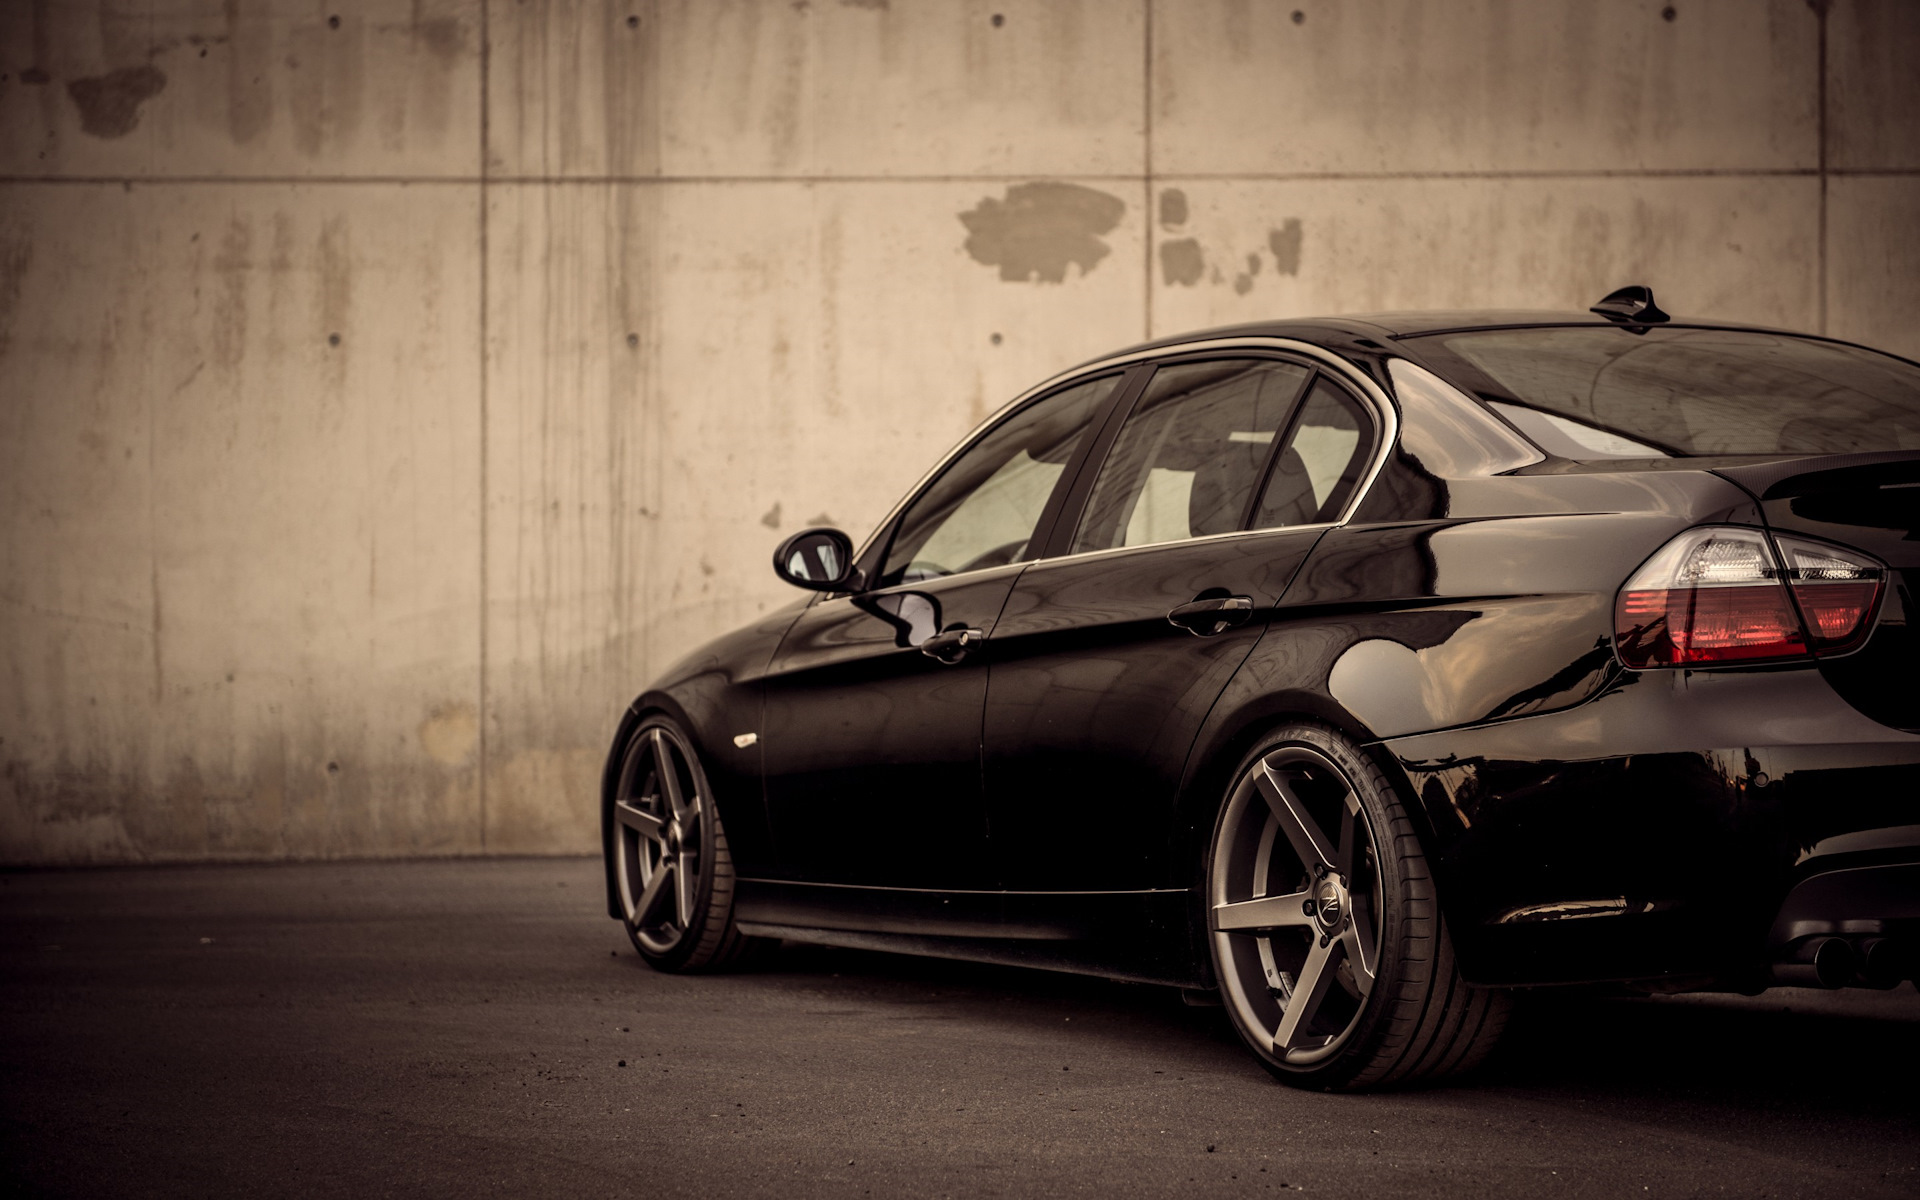 BMW e90 черная